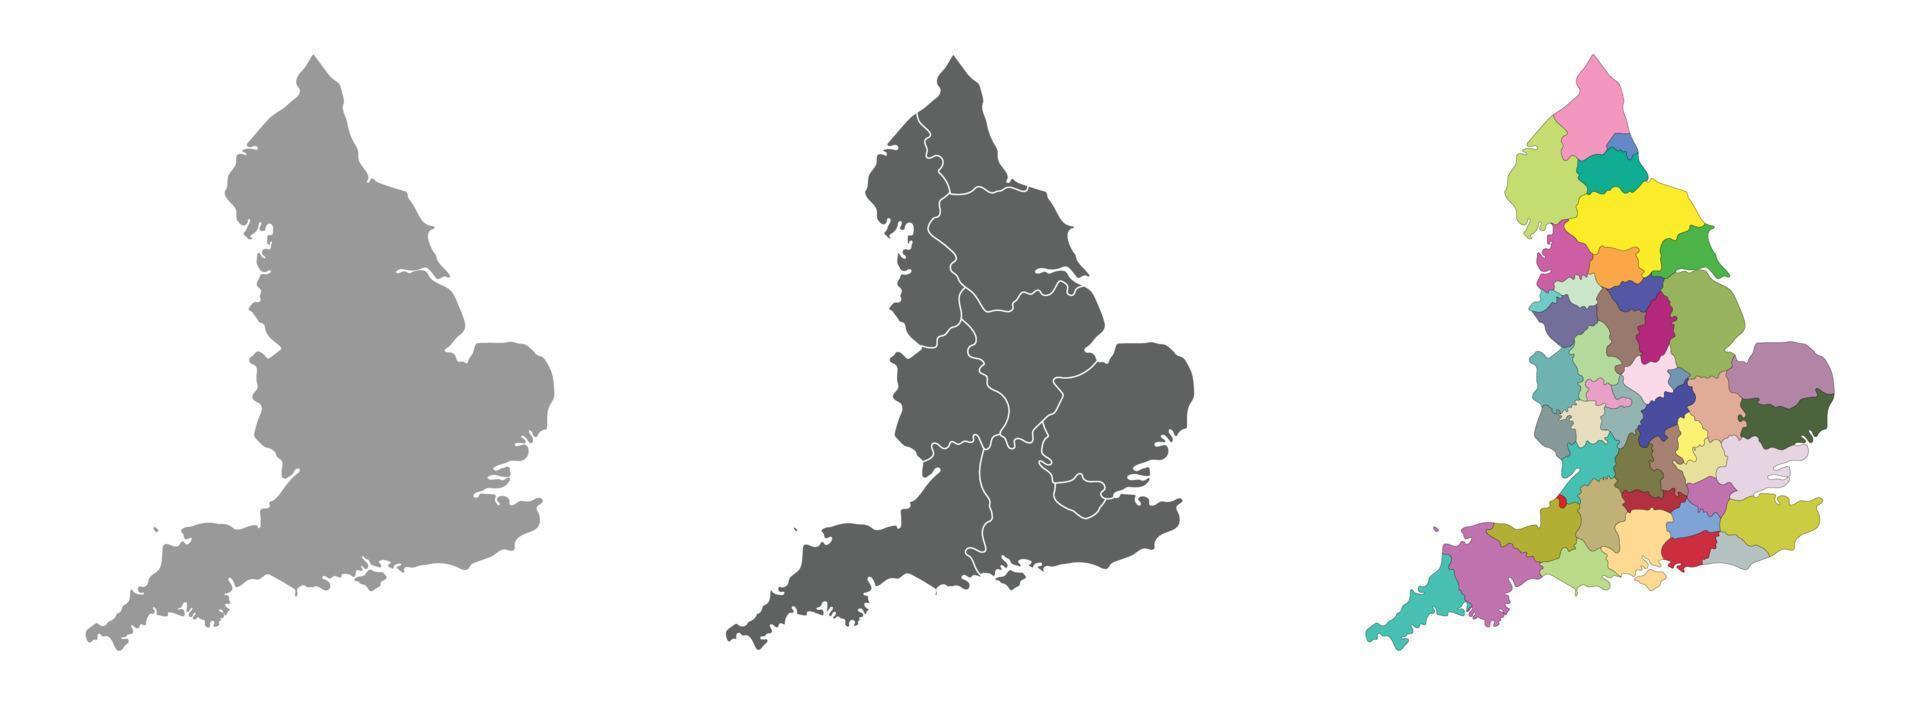 Inglaterra mapa conjunto do cinzento e multicolorido administrações regiões mapa vetor